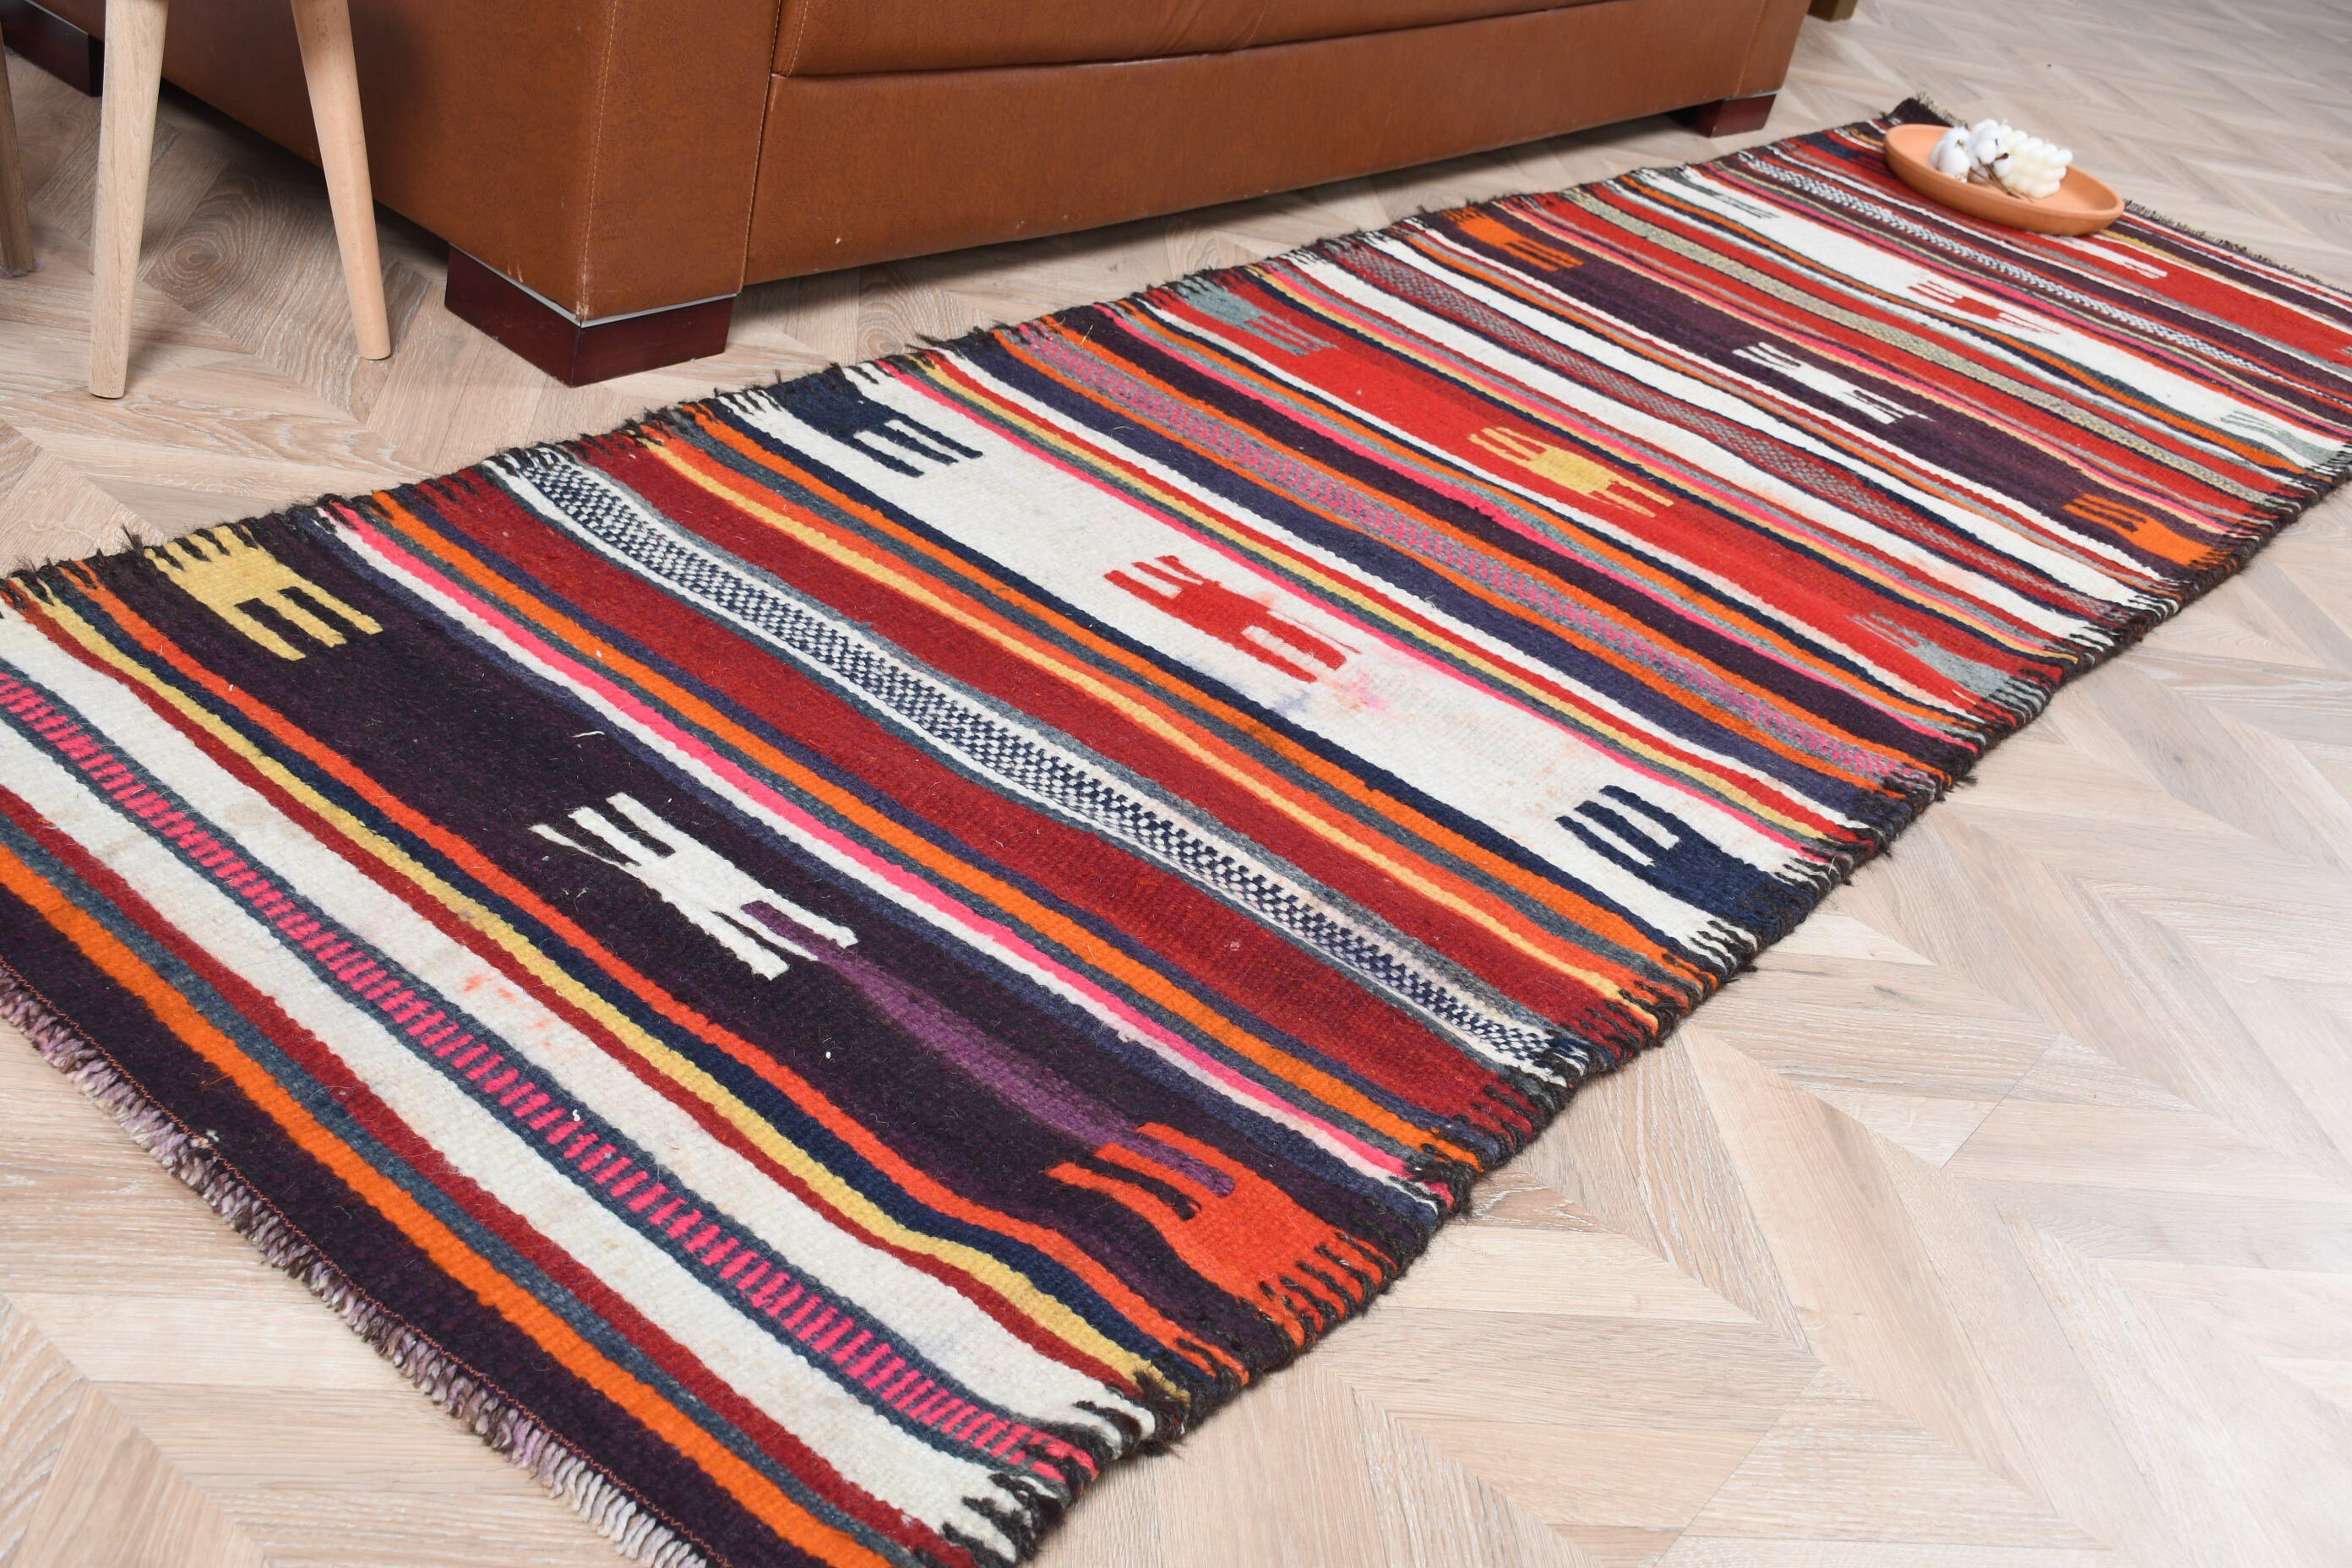 Oushak Rug, Vintage Rug, Pale Rugs, Turkish Rugs, Rugs for Hallway, Stair Rug, Cool Rugs, 2.7x9.5 ft Runner Rug, Red Wool Rug, Custom Rugs